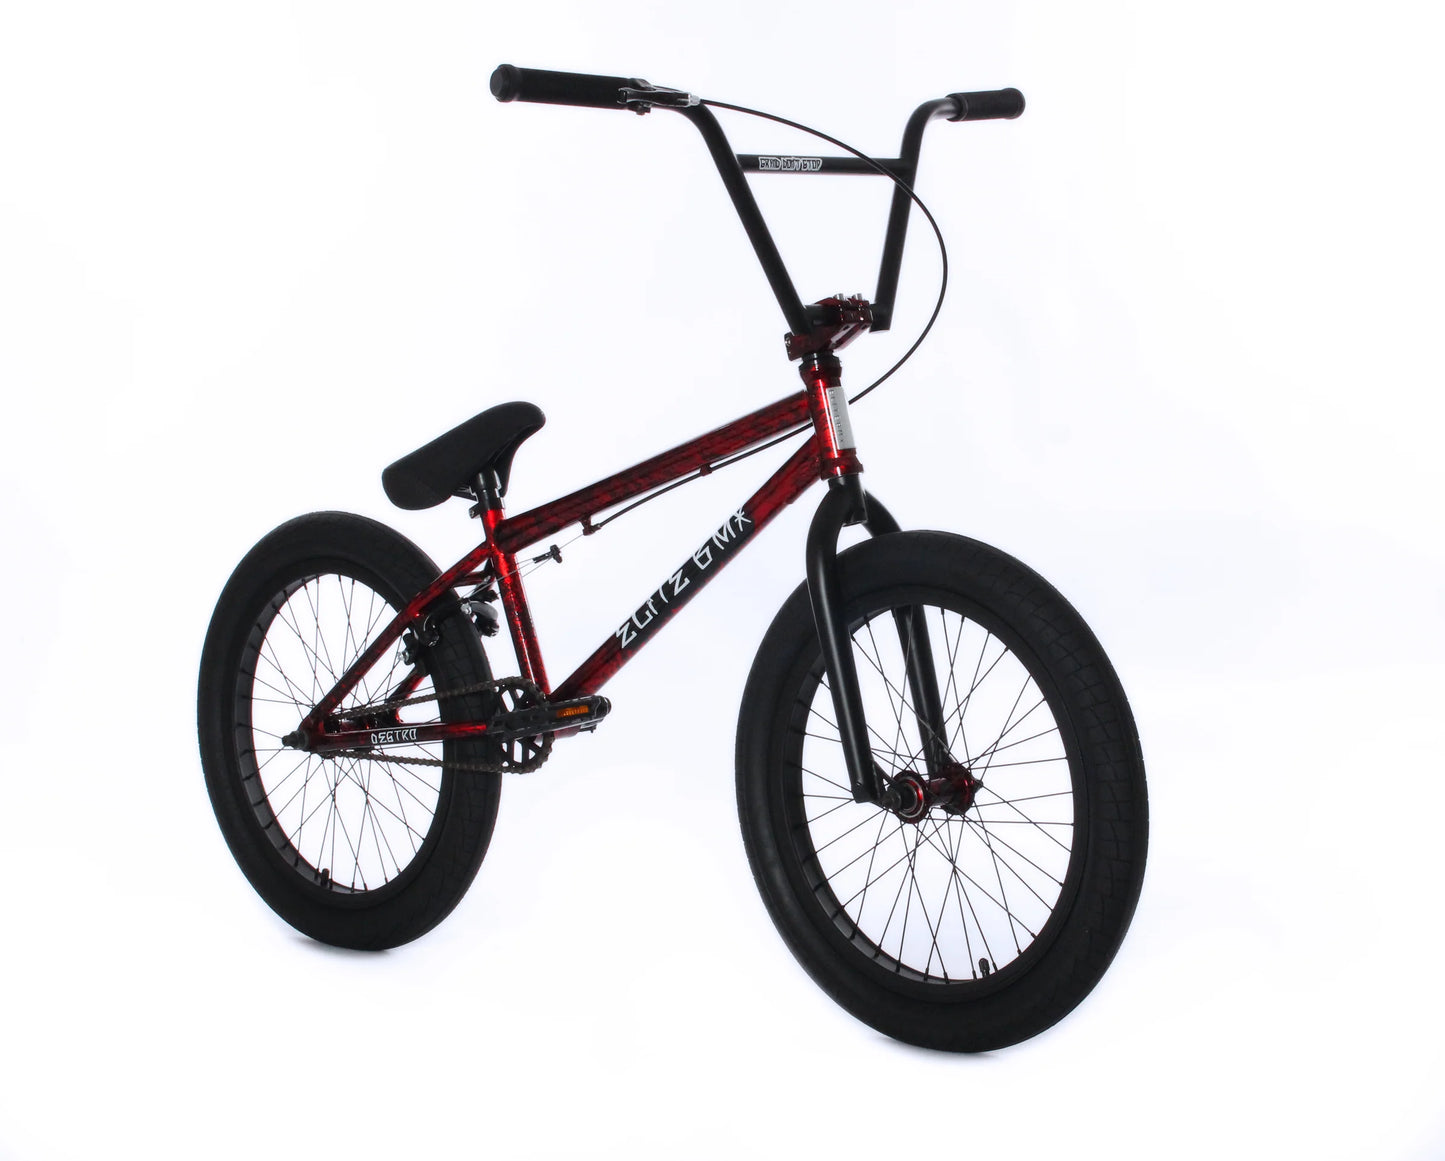 Destro BMX Bike | Elite BMX Destro Bikes | Desto Bike | Elite BMX Bike | BMX Bikes | Elite Bikes | Affordable Bikes | Affordable BMX Bikes | Bike Lovers USA